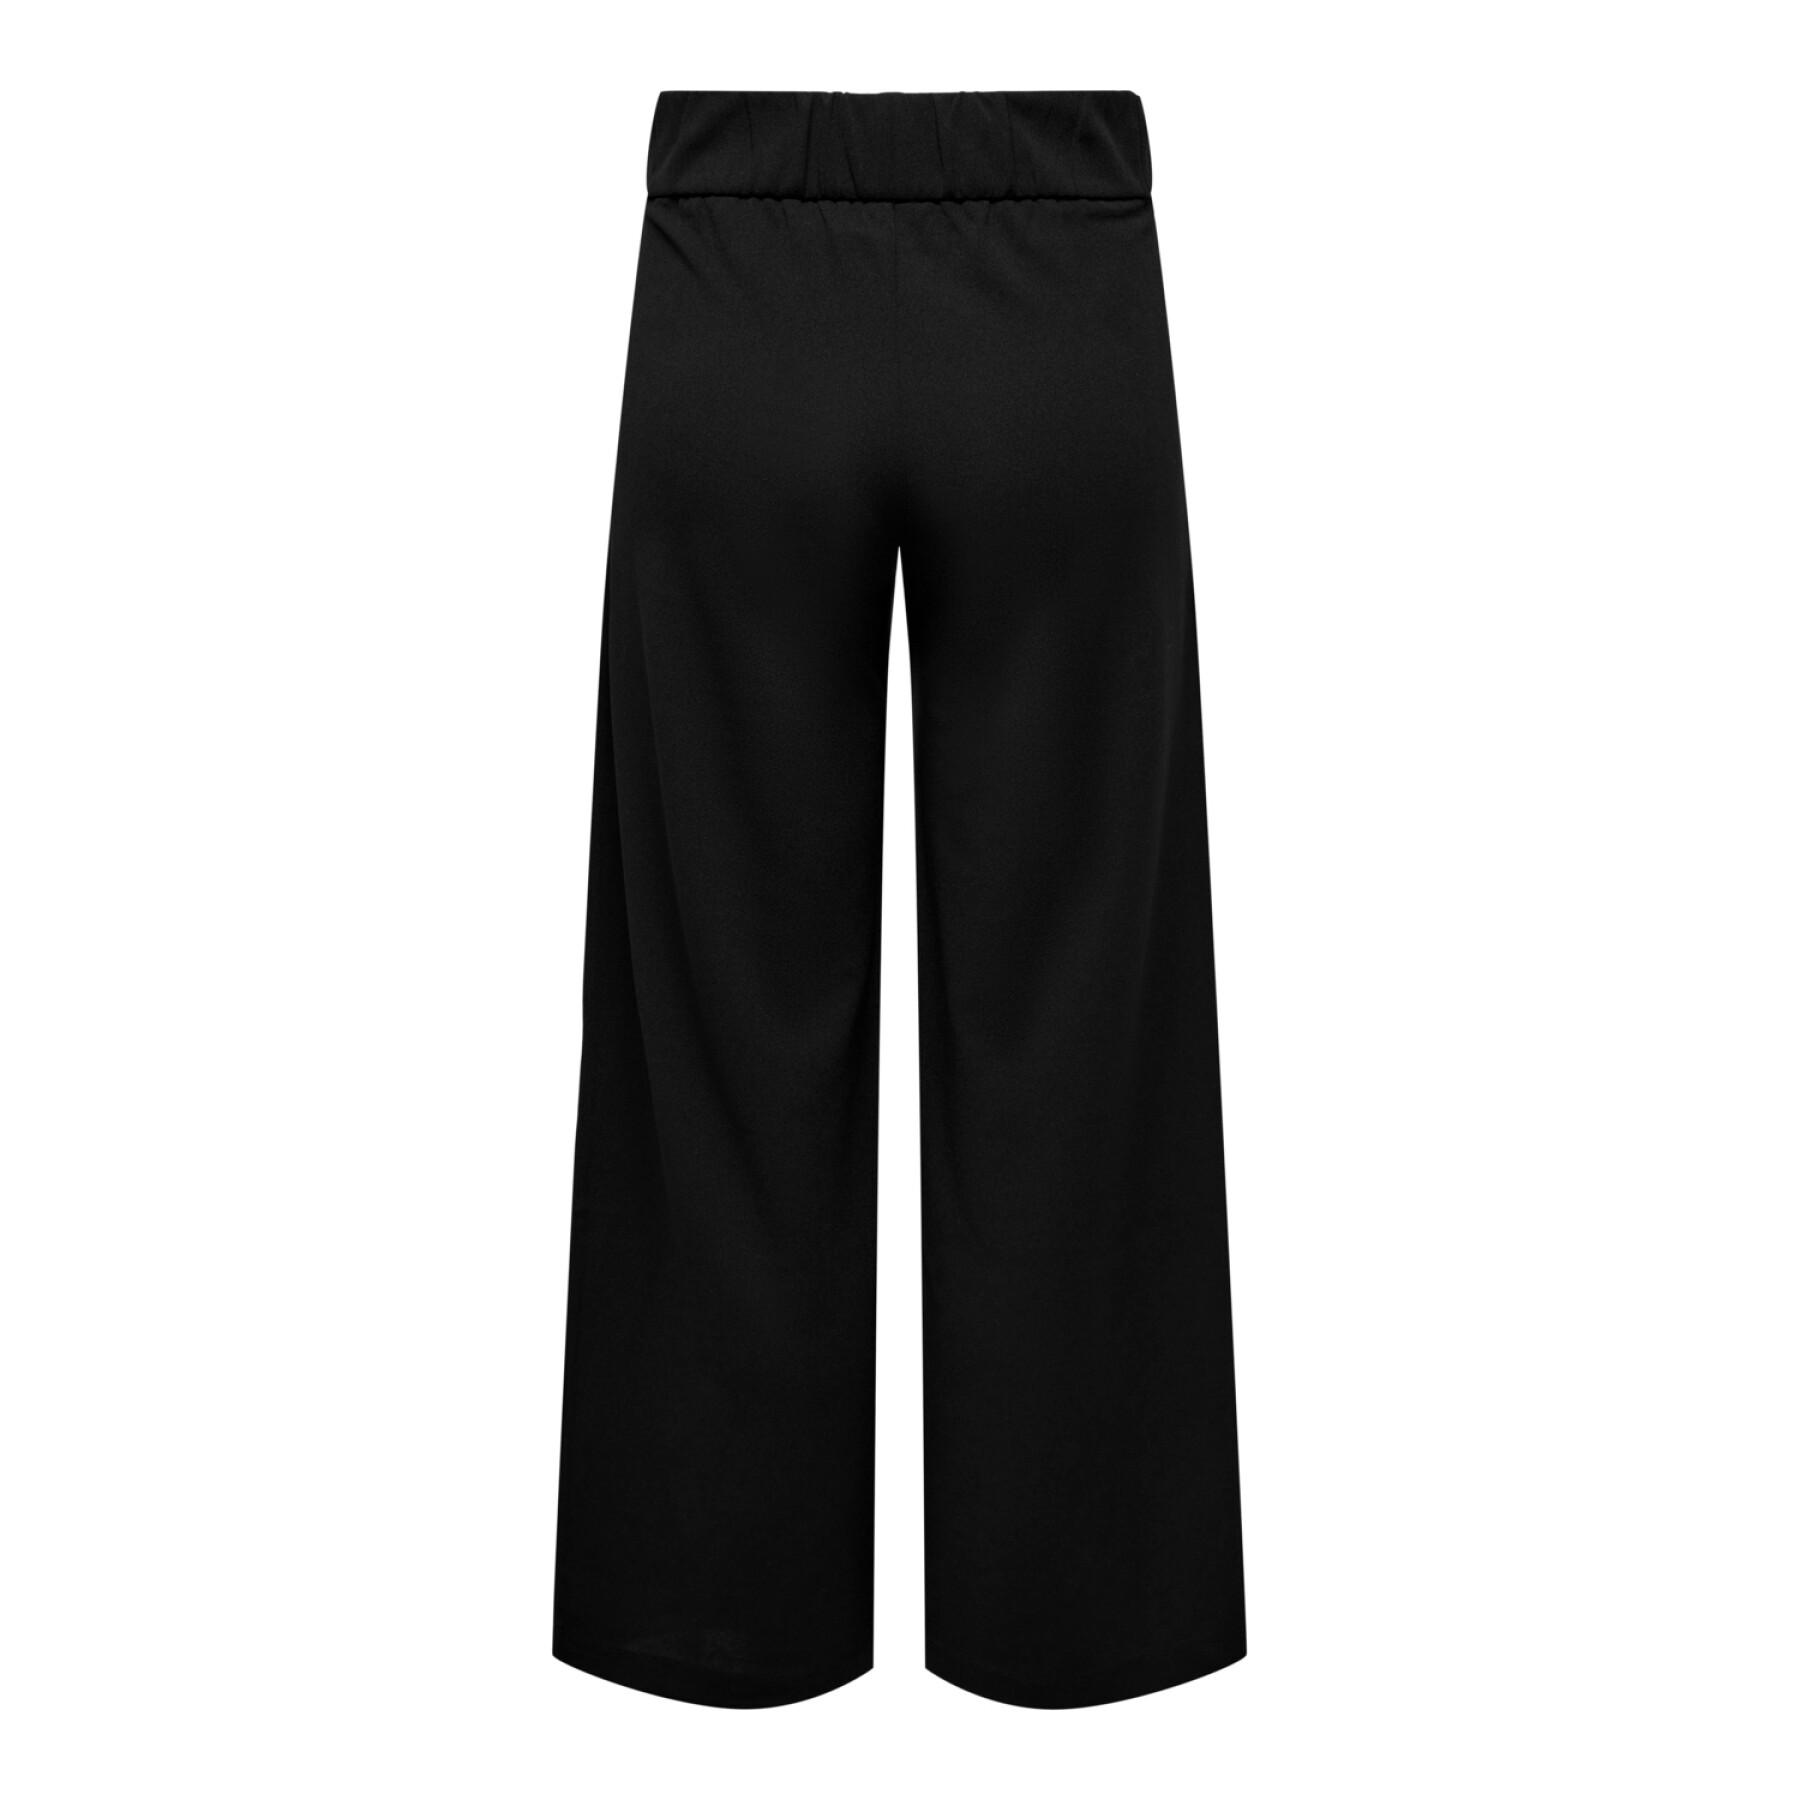 Women's pants JDY Geggo JRS New Long